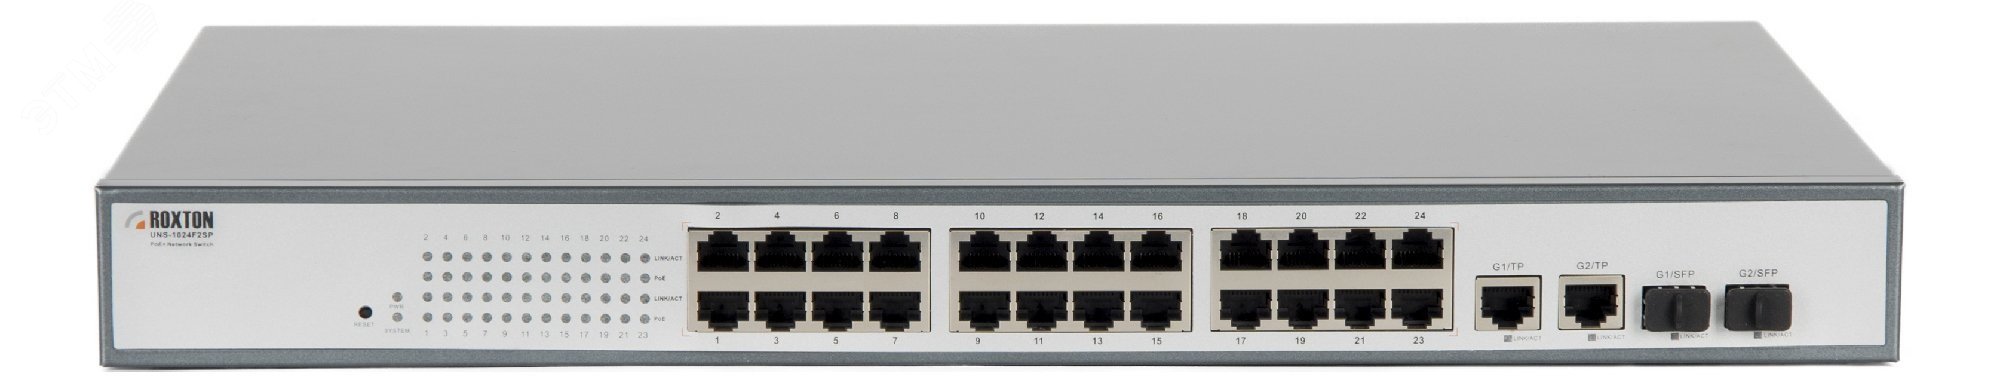 Коммутатор неуправляемый сетевой , порт 10/100 Мбит/с х 24, порт TF х 2, порт SFP х 2, PoE+(IEEE 802.3at-2009), 1U UNS-1024F2SP Roxton